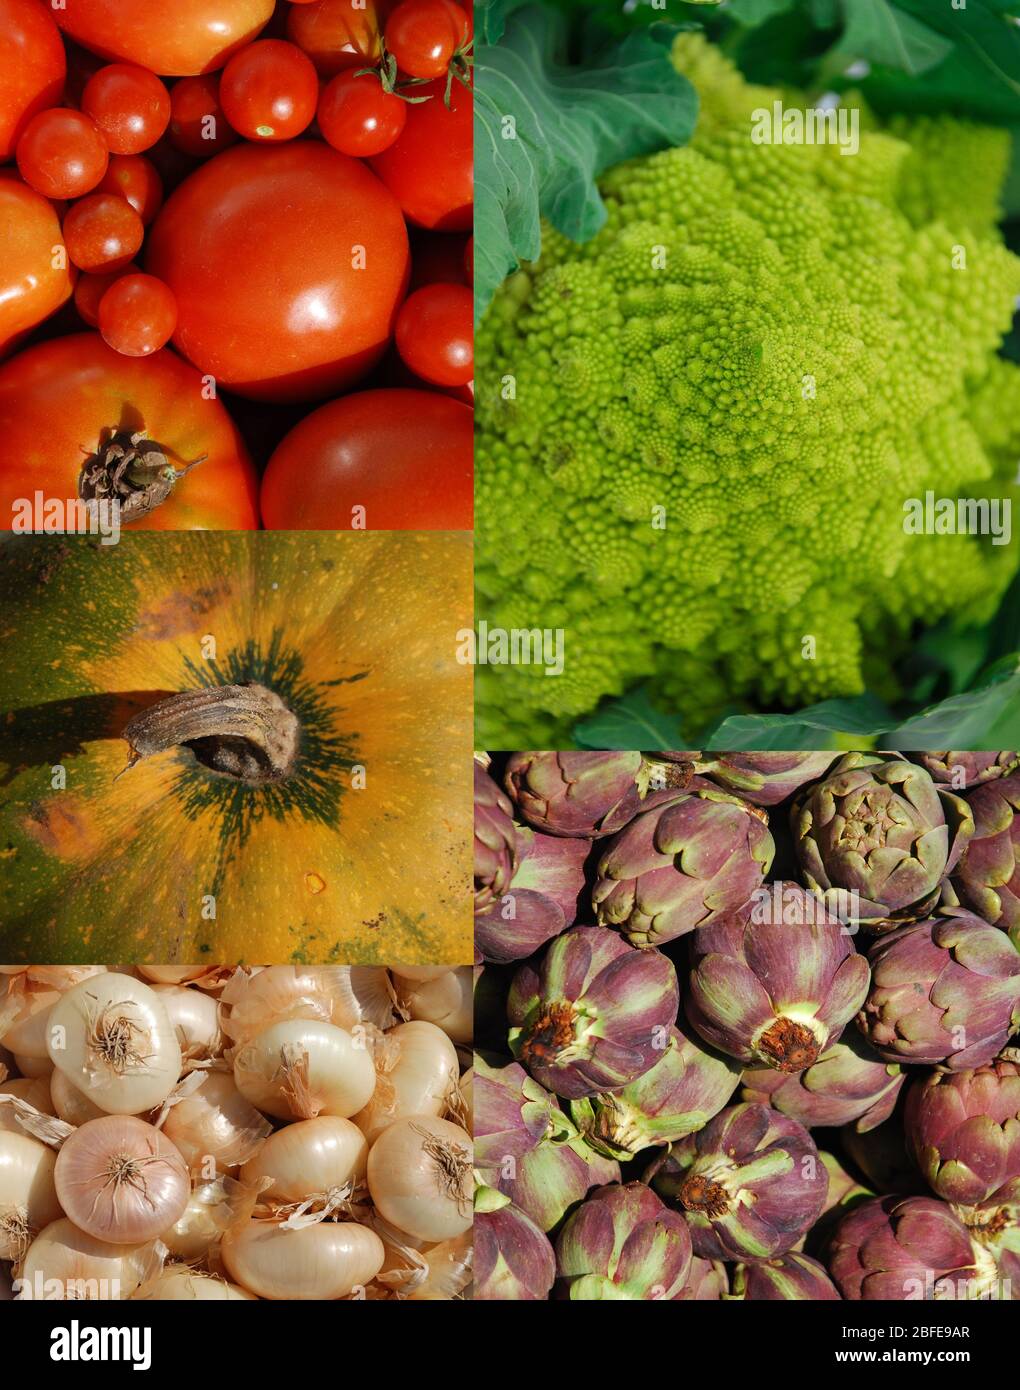 Collage di 5 coloratissimi tipi di verdure: Cavolfiore romanesco, carciofi, zucca, cipolle e una varietà di pomodori (compresa ciliegia e prugna) Foto Stock